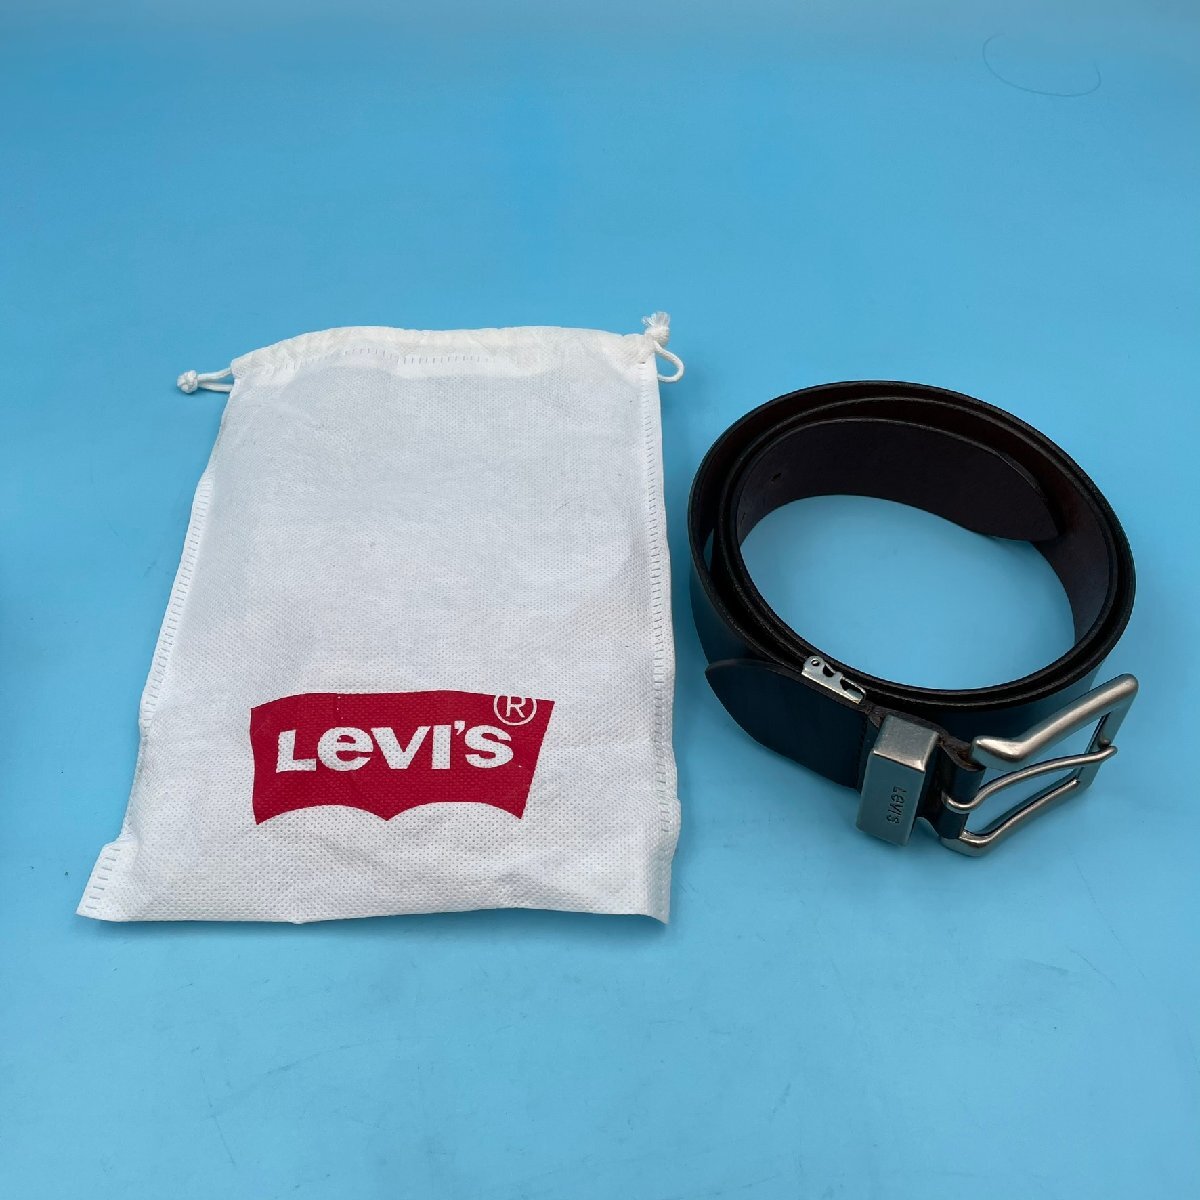 【A9909O100】Levi's ベルト レザー メンズ リーバイス こげ茶 ダークブラウン ビジネス カジュアル 革 ブランド やや重め 合わせやすい_画像1